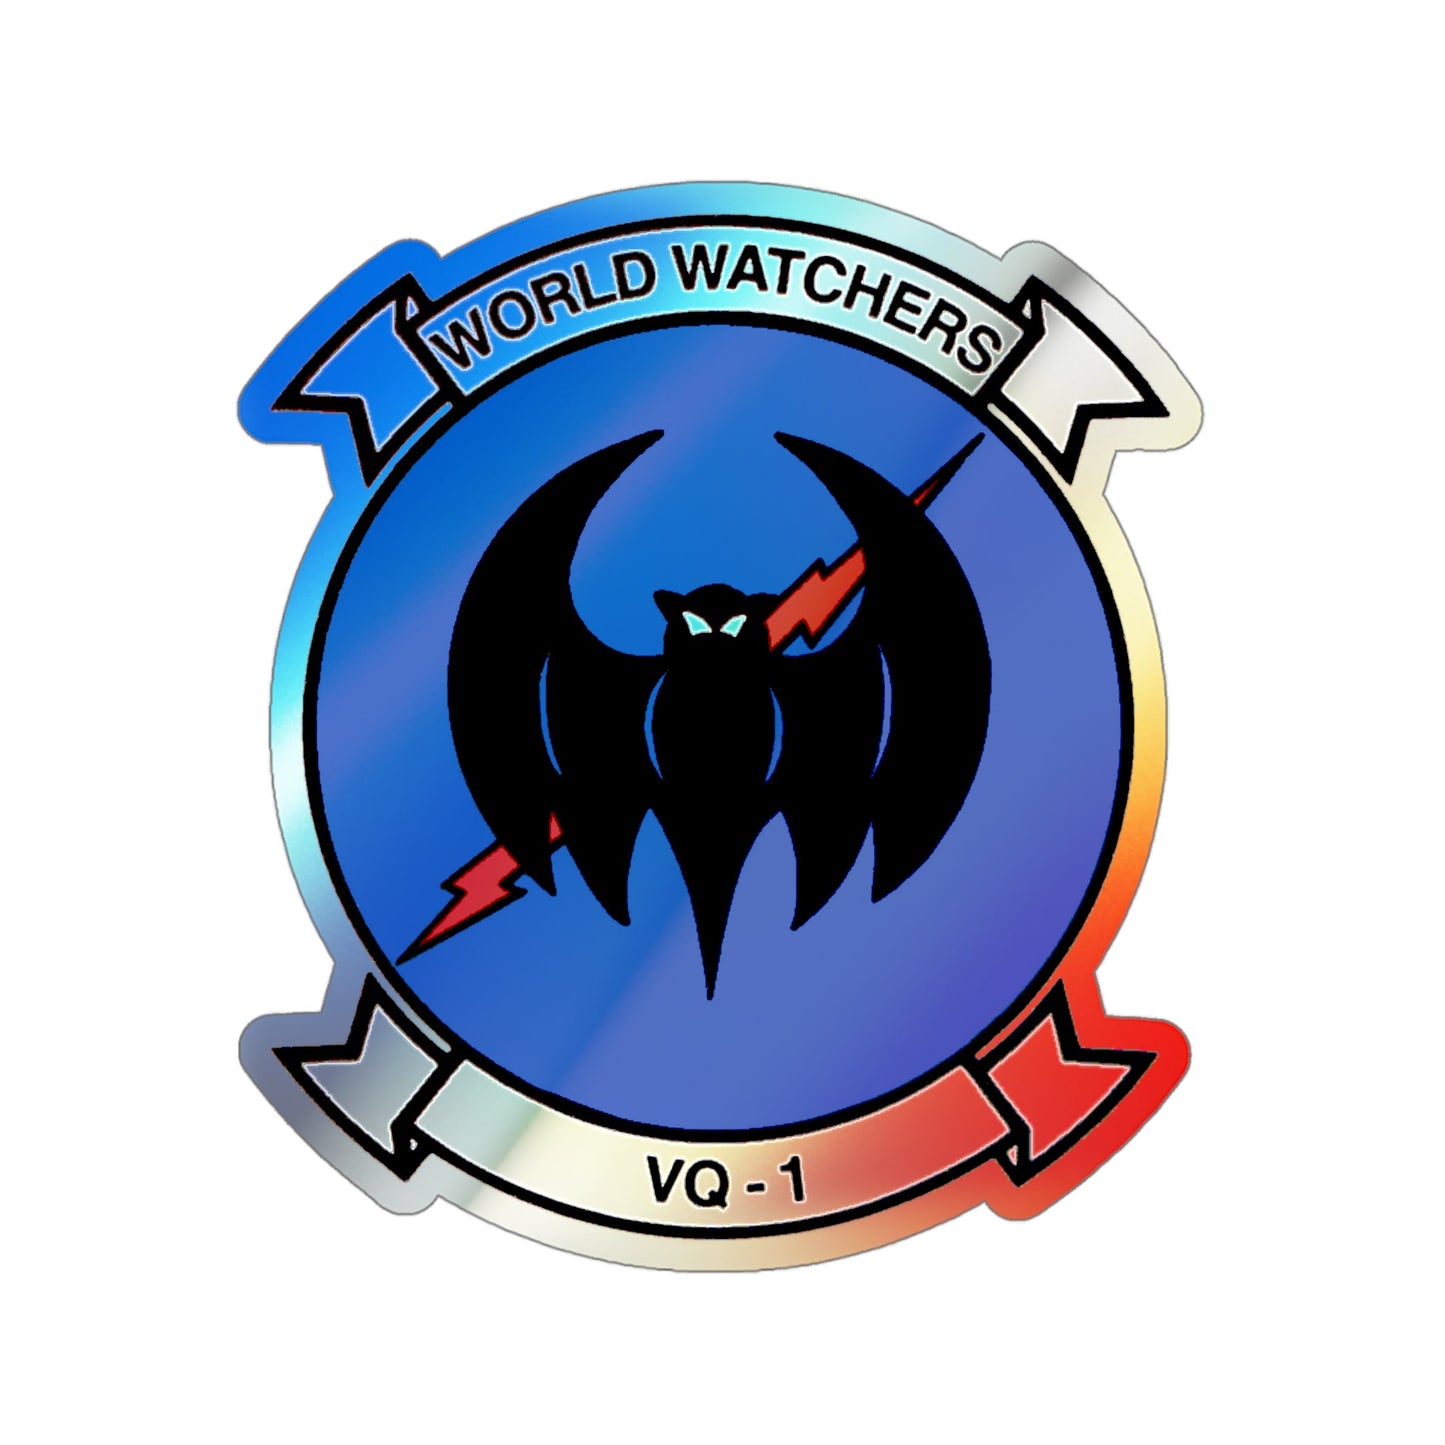 VQ 1 World Watchers v2 (U.S. Navy) Holographic STICKER Die-Cut Vinyl Decal-4 Inch-The Sticker Space